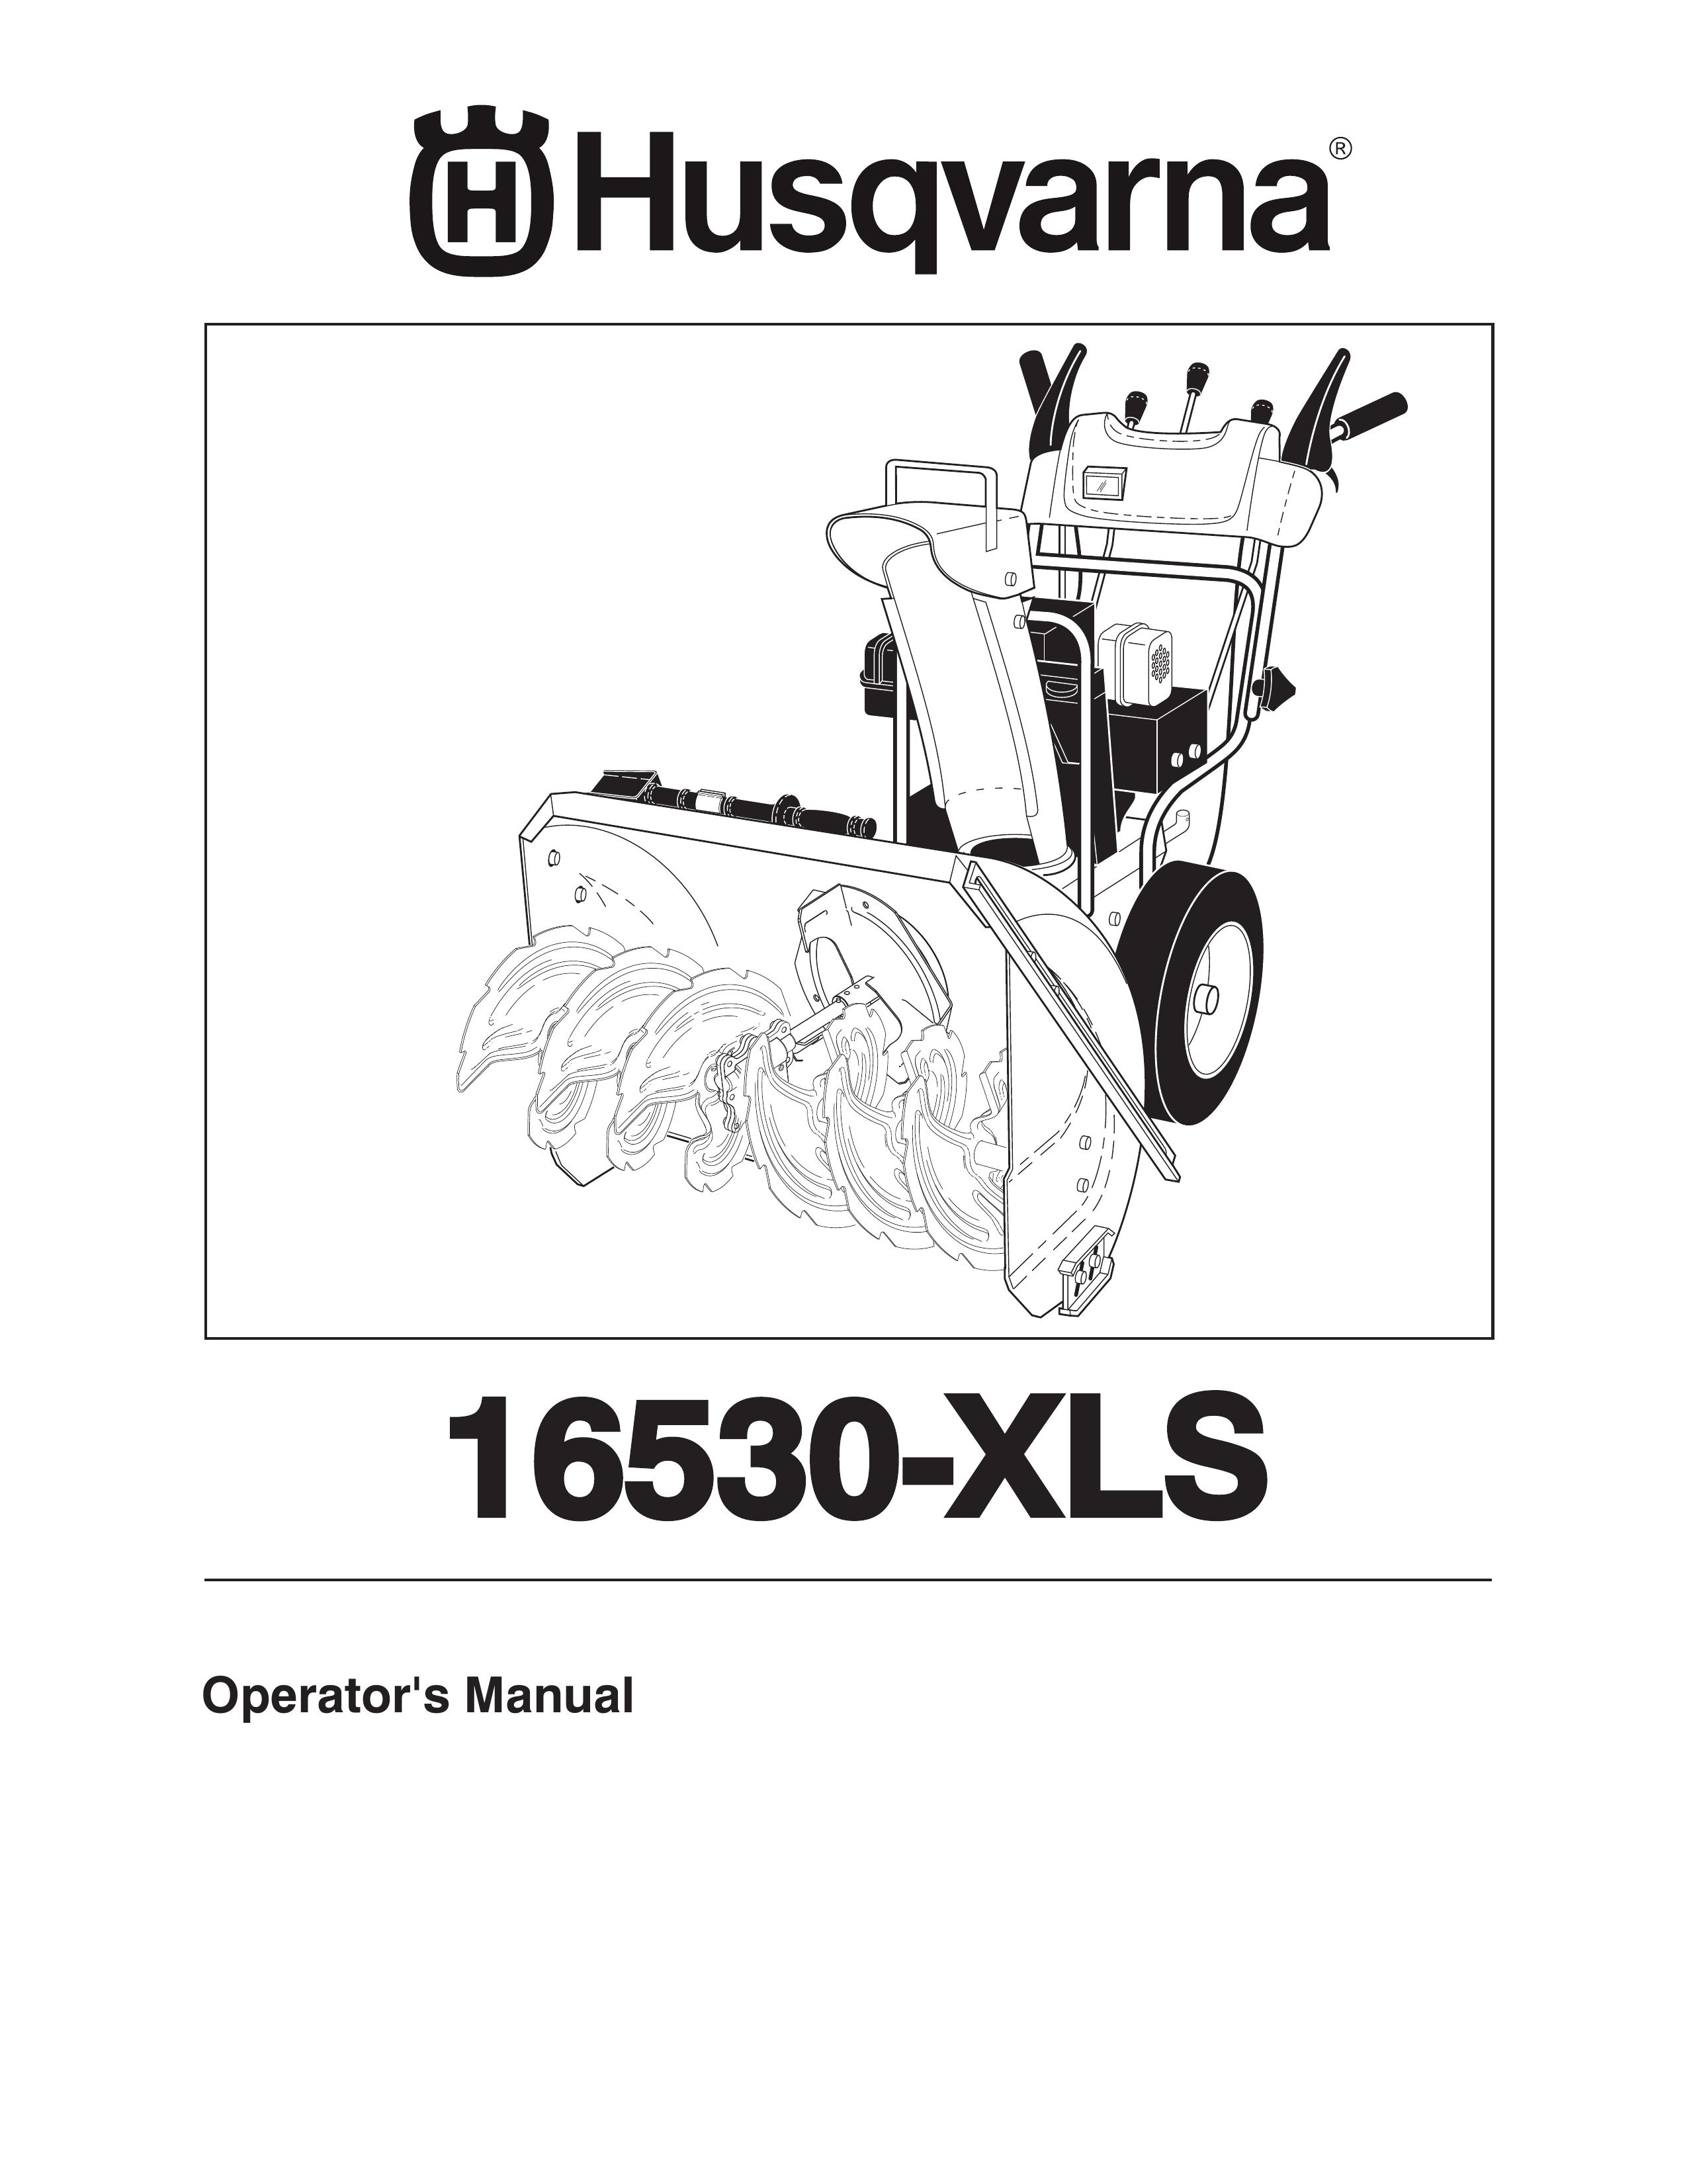 Husqvarna 16530-XLS Snow Blower User Manual